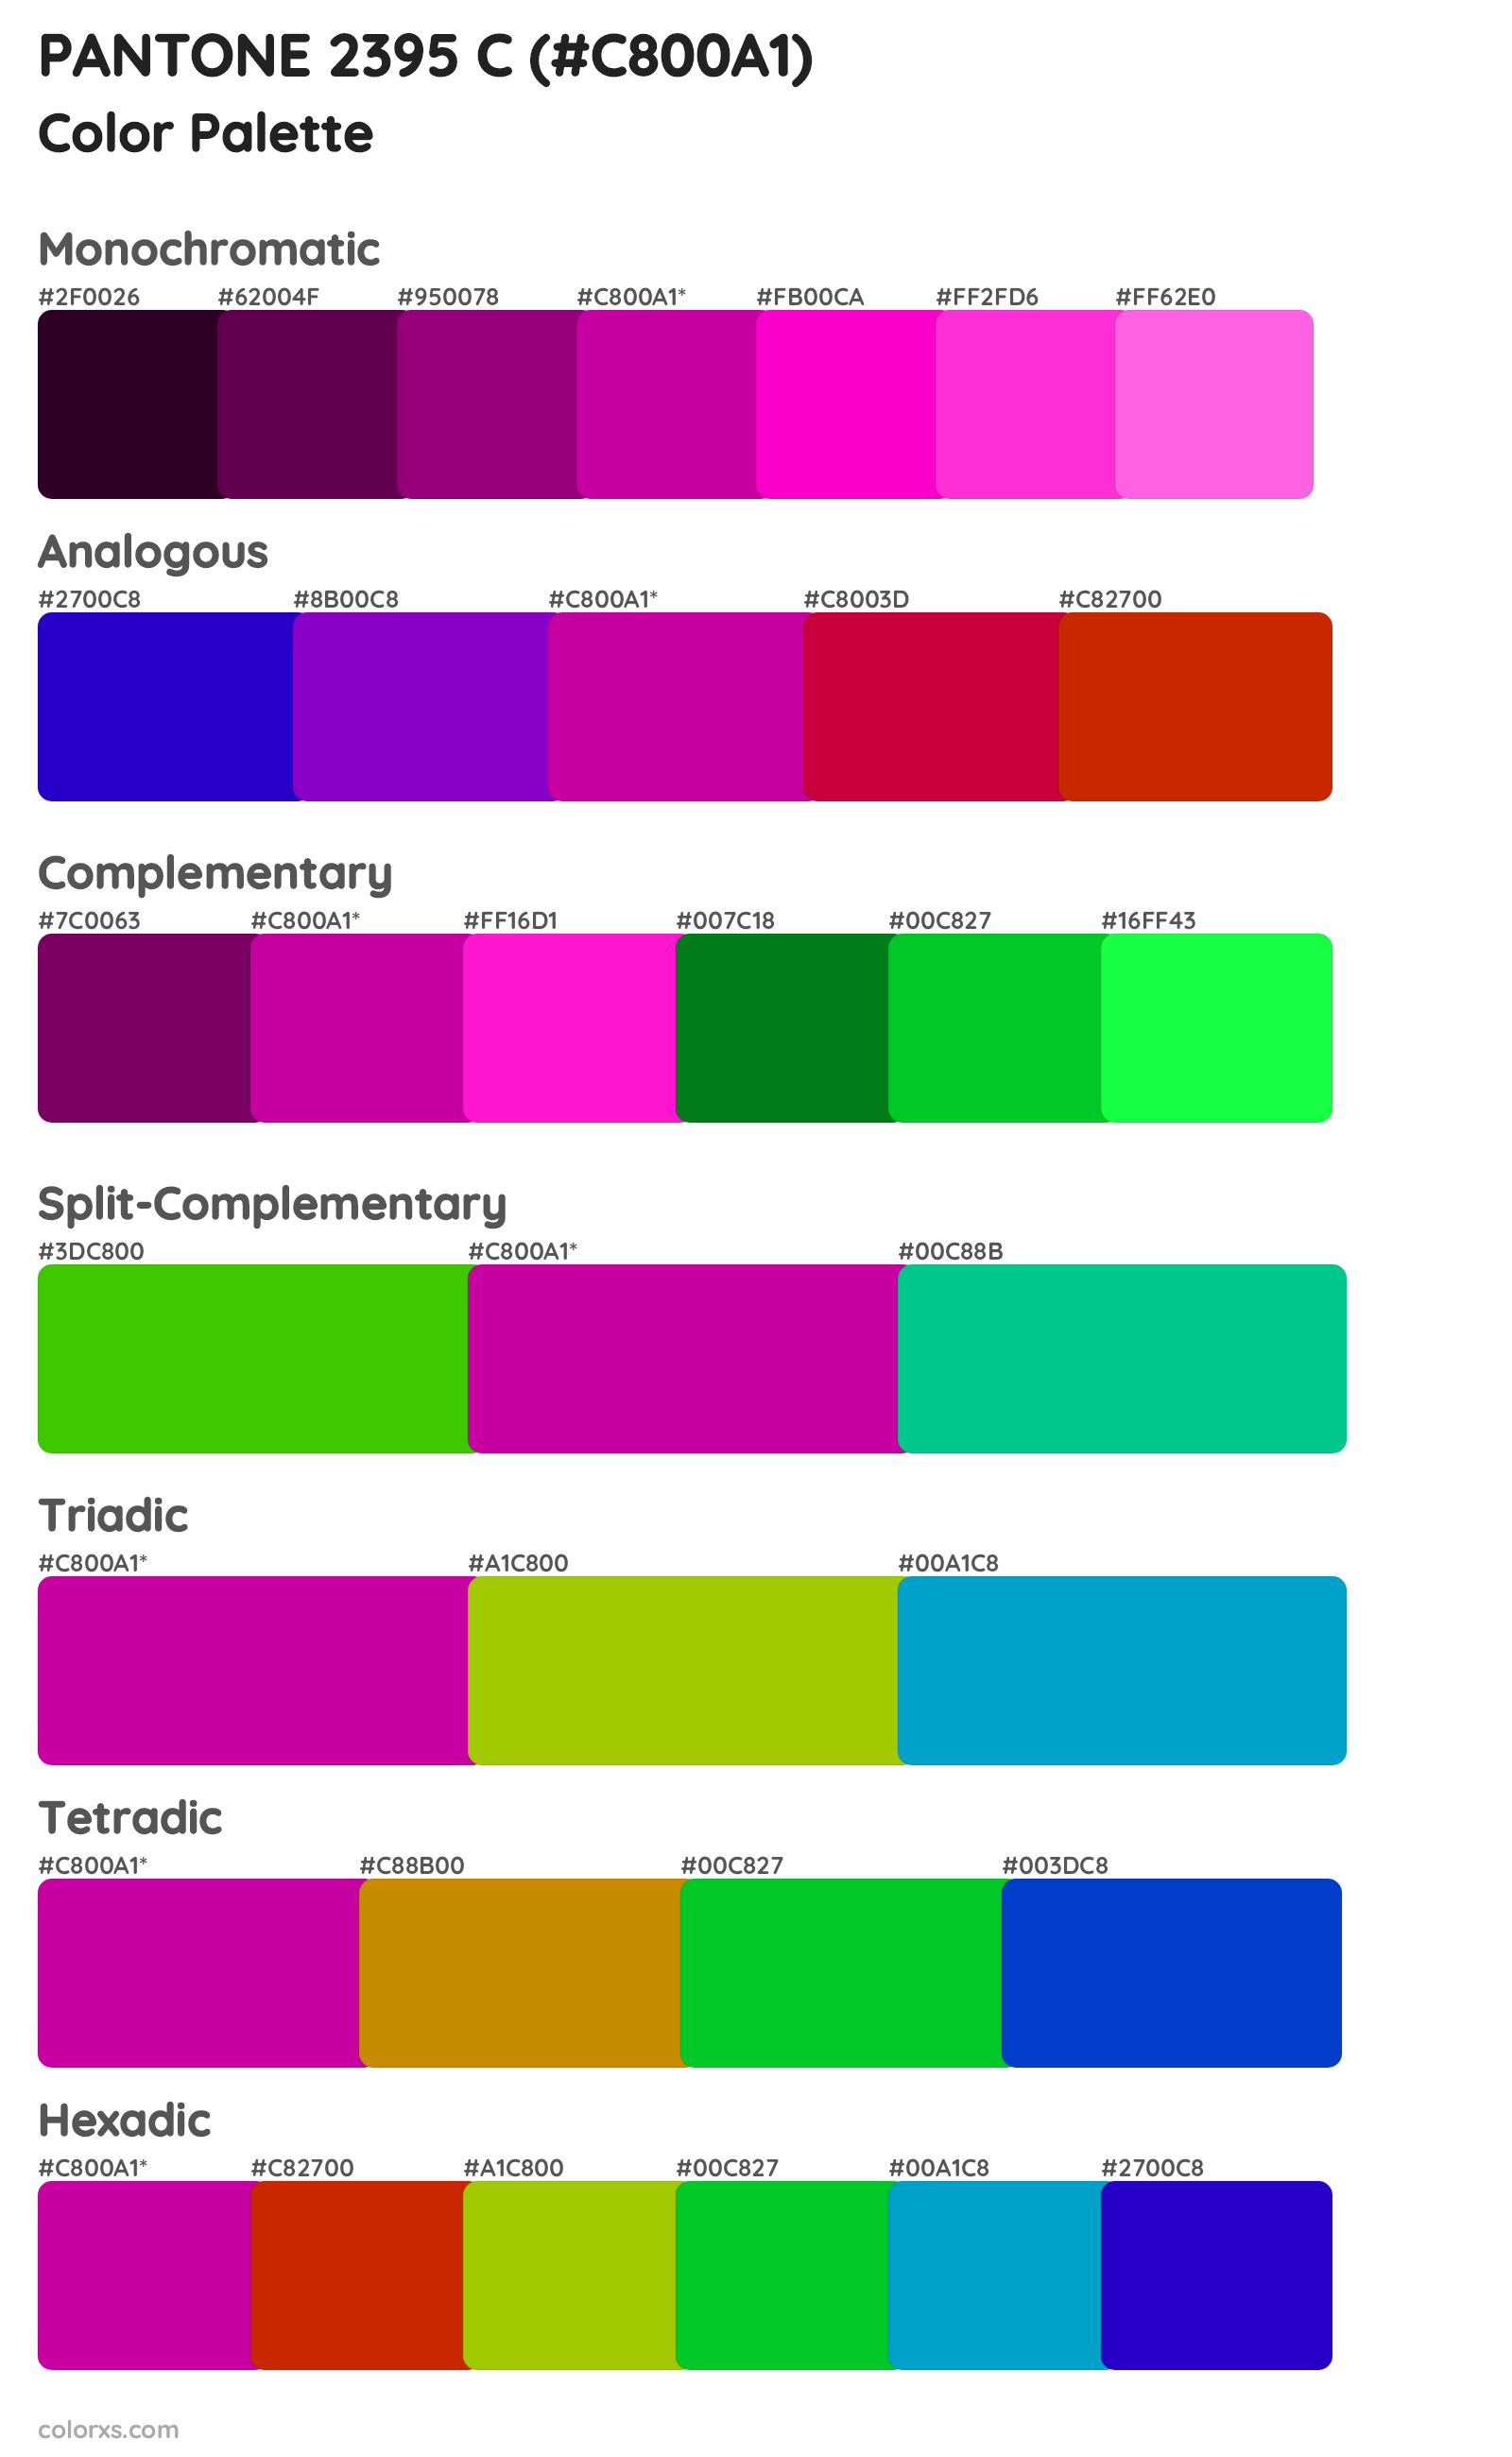 PANTONE 2395 C Color Scheme Palettes